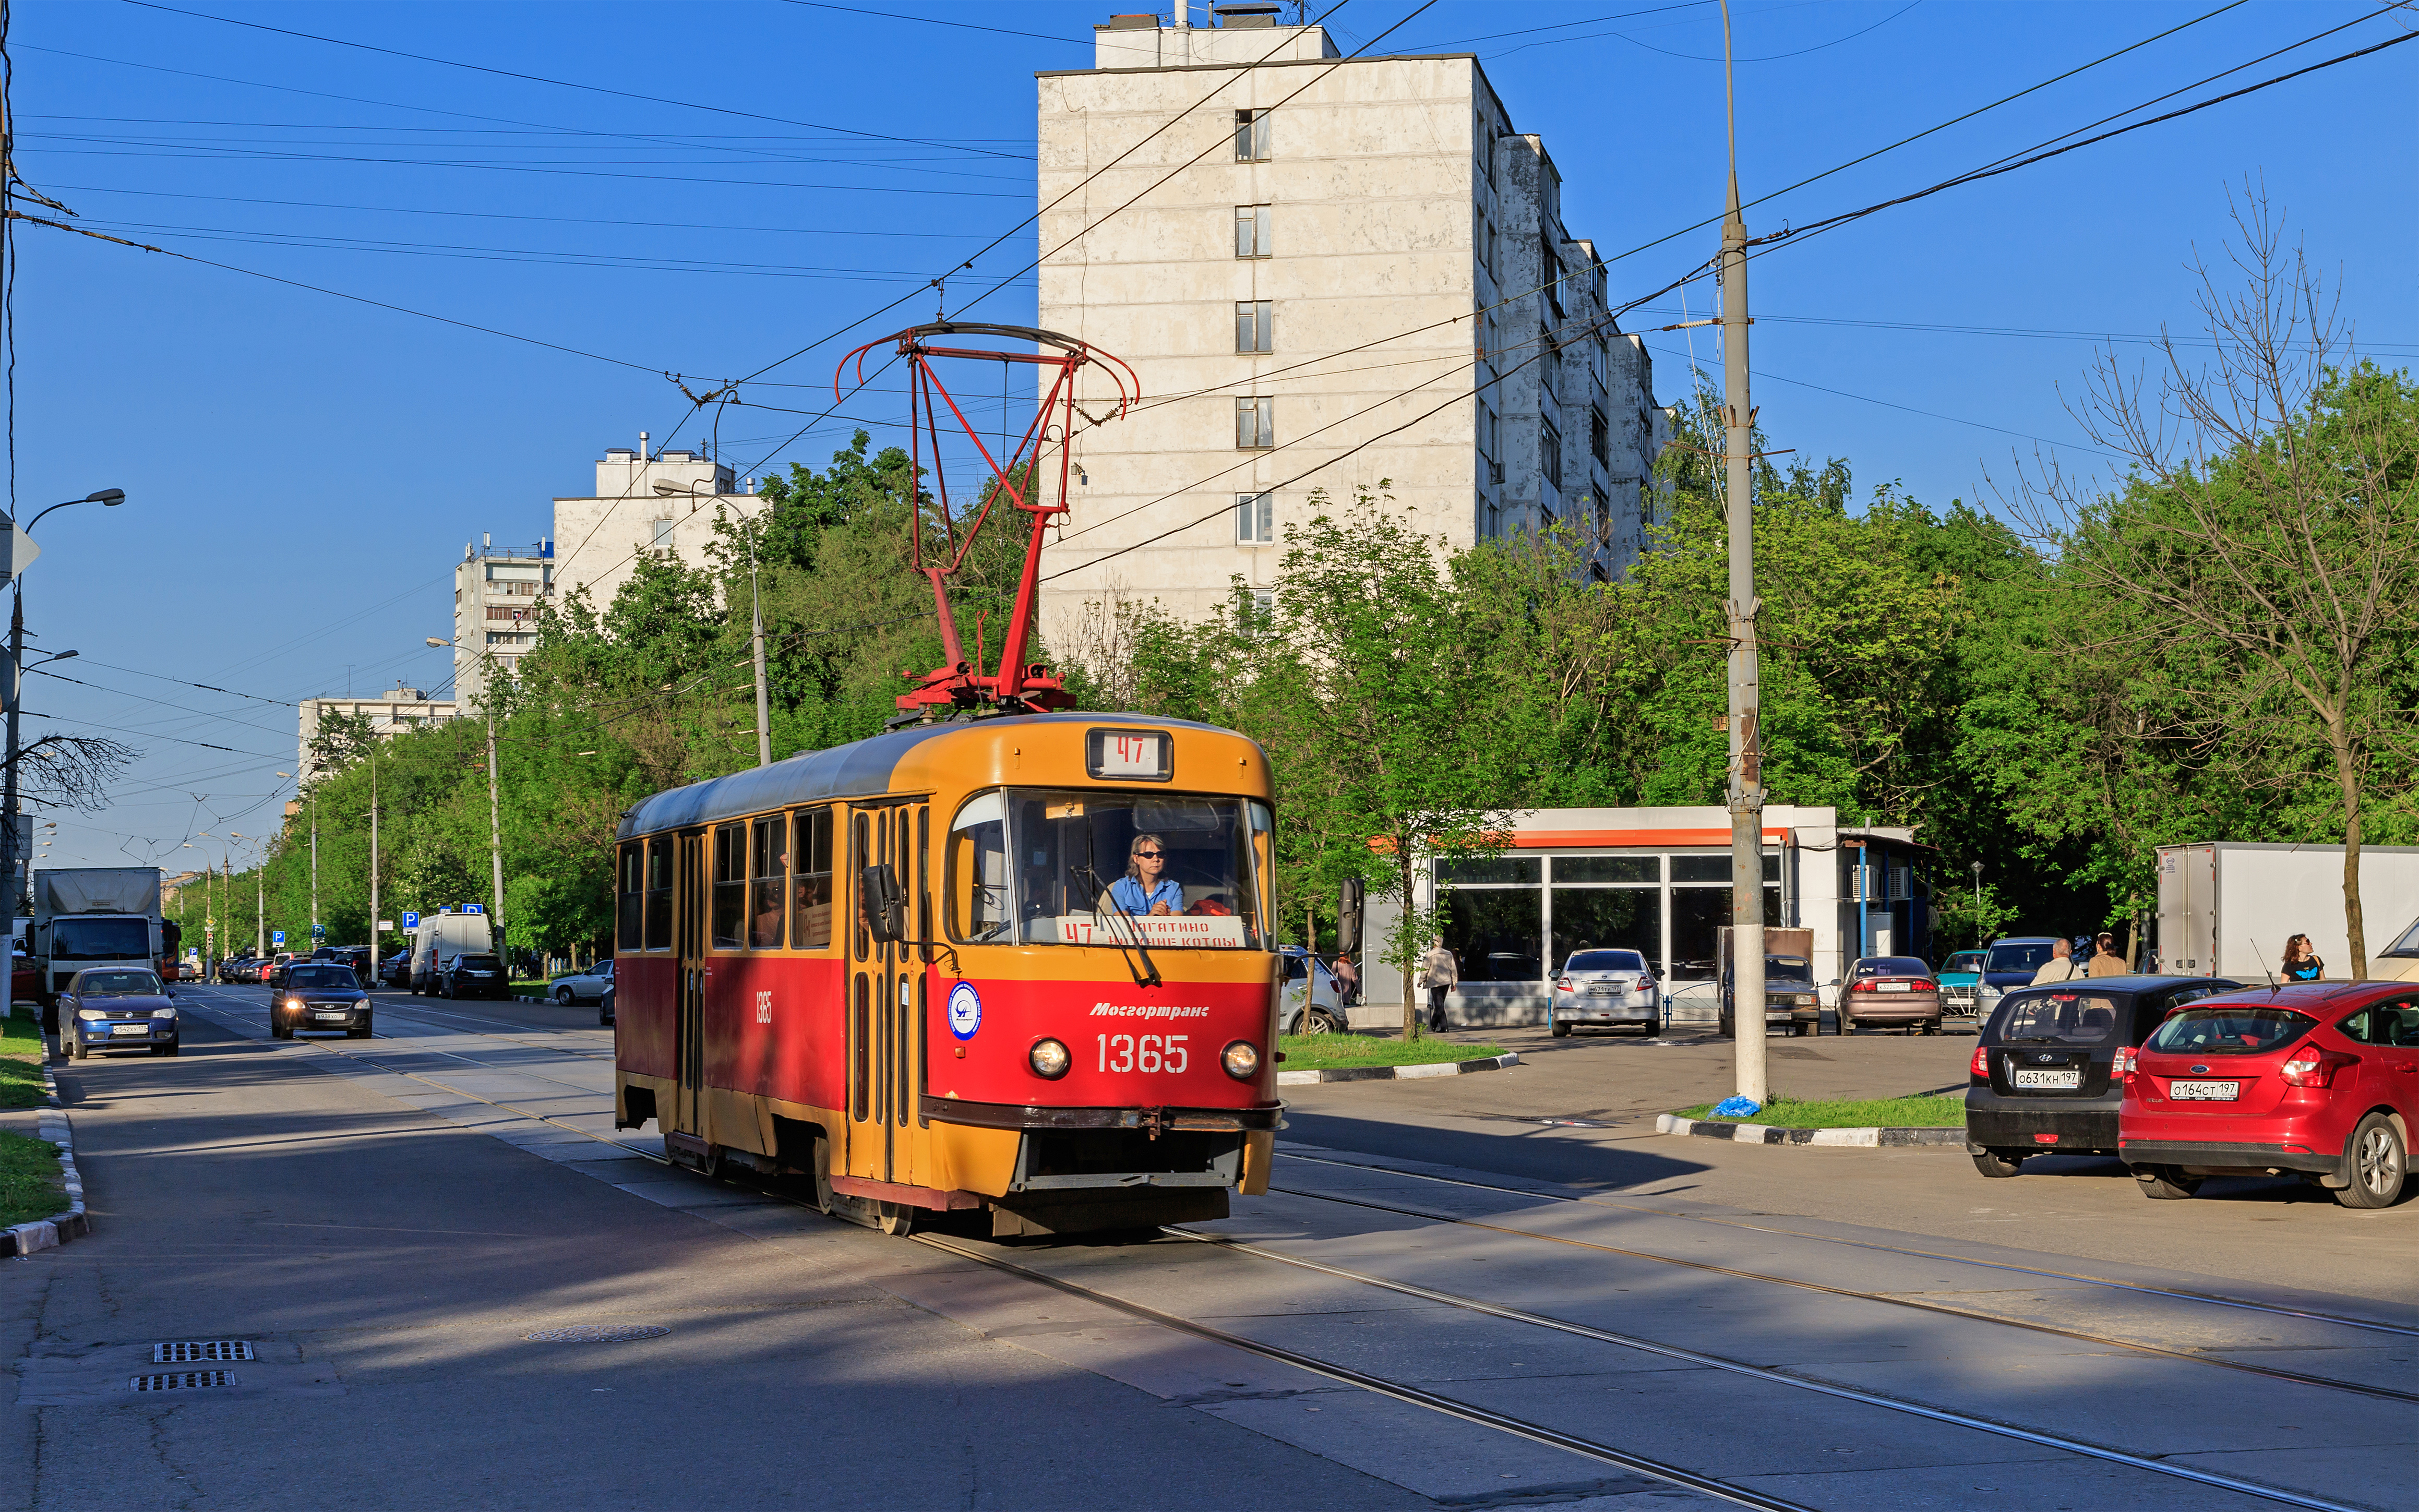 Nagatinsky Zaton SudostroitelnayaStreet with tram 05-2015